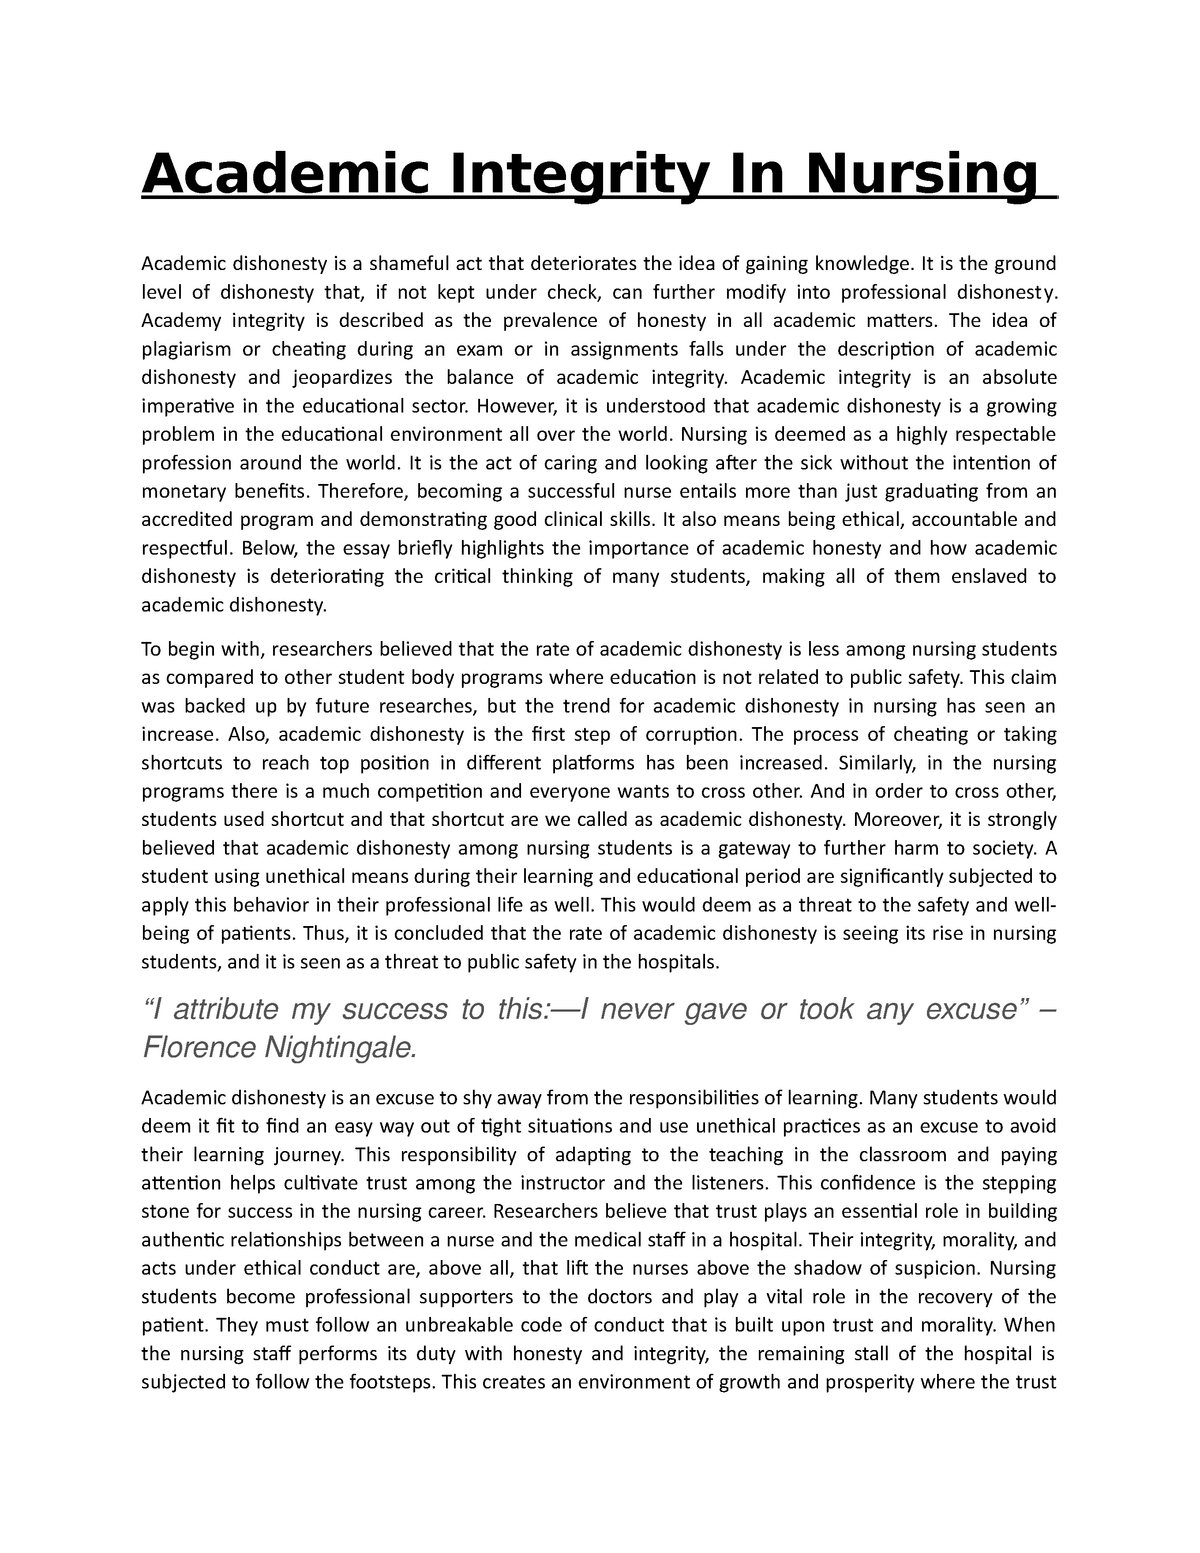 integrity in nursing essay